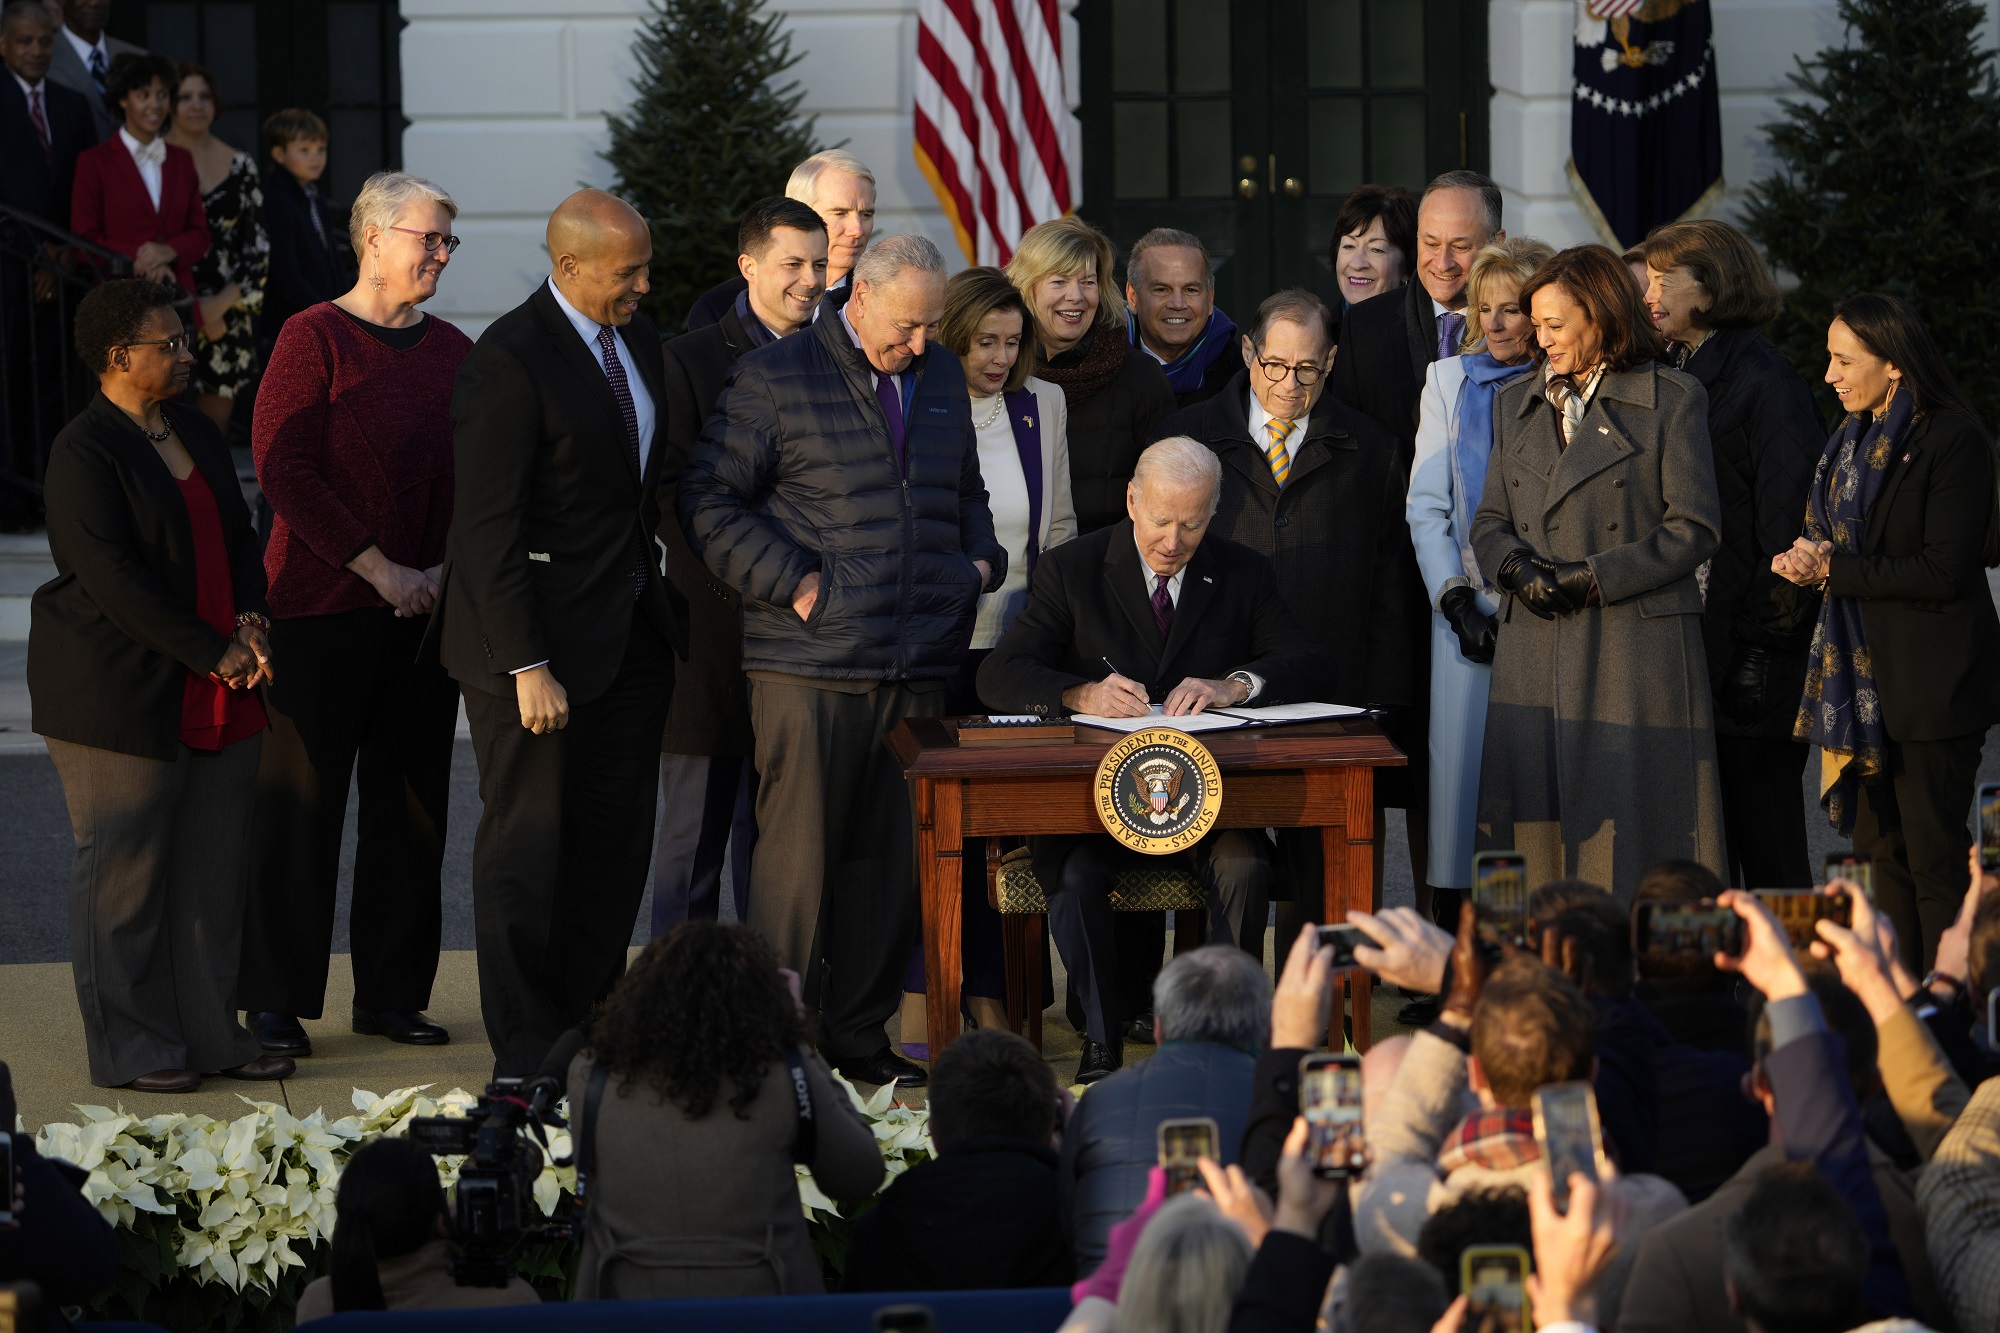 ΗΠΑ: Σε πανηγυρική τελετή υπέγραψε ο Τζο Μπάιντεν το νόμο για τους γάμους των ομοφυλόφιλων (photos)